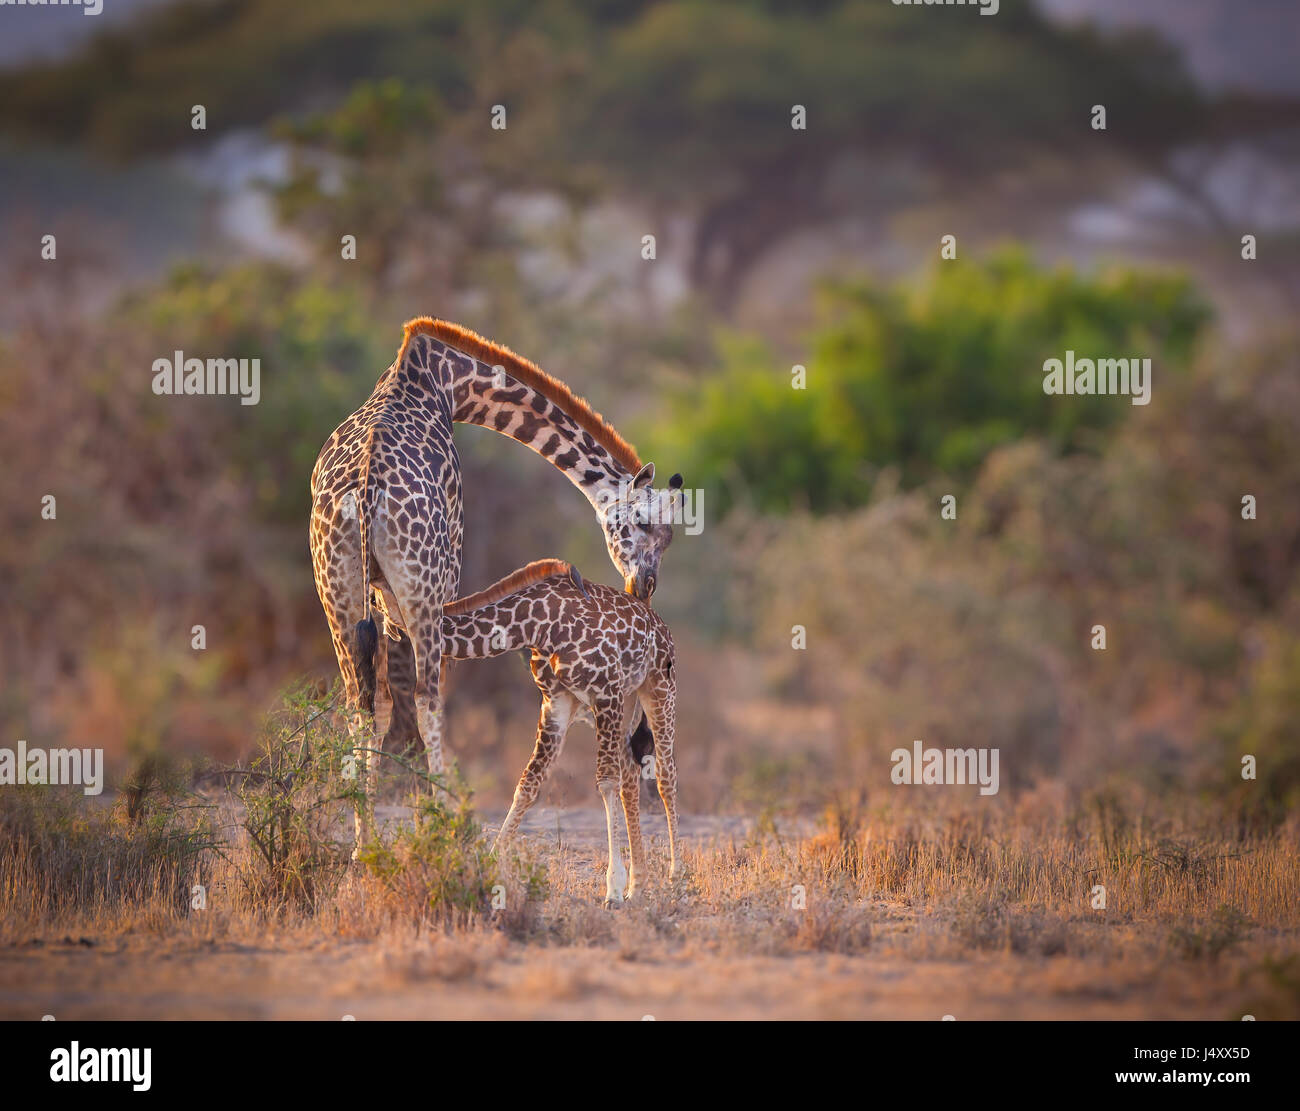 The Kiss. Mother giraffe kisses her nursing child Stock Photo